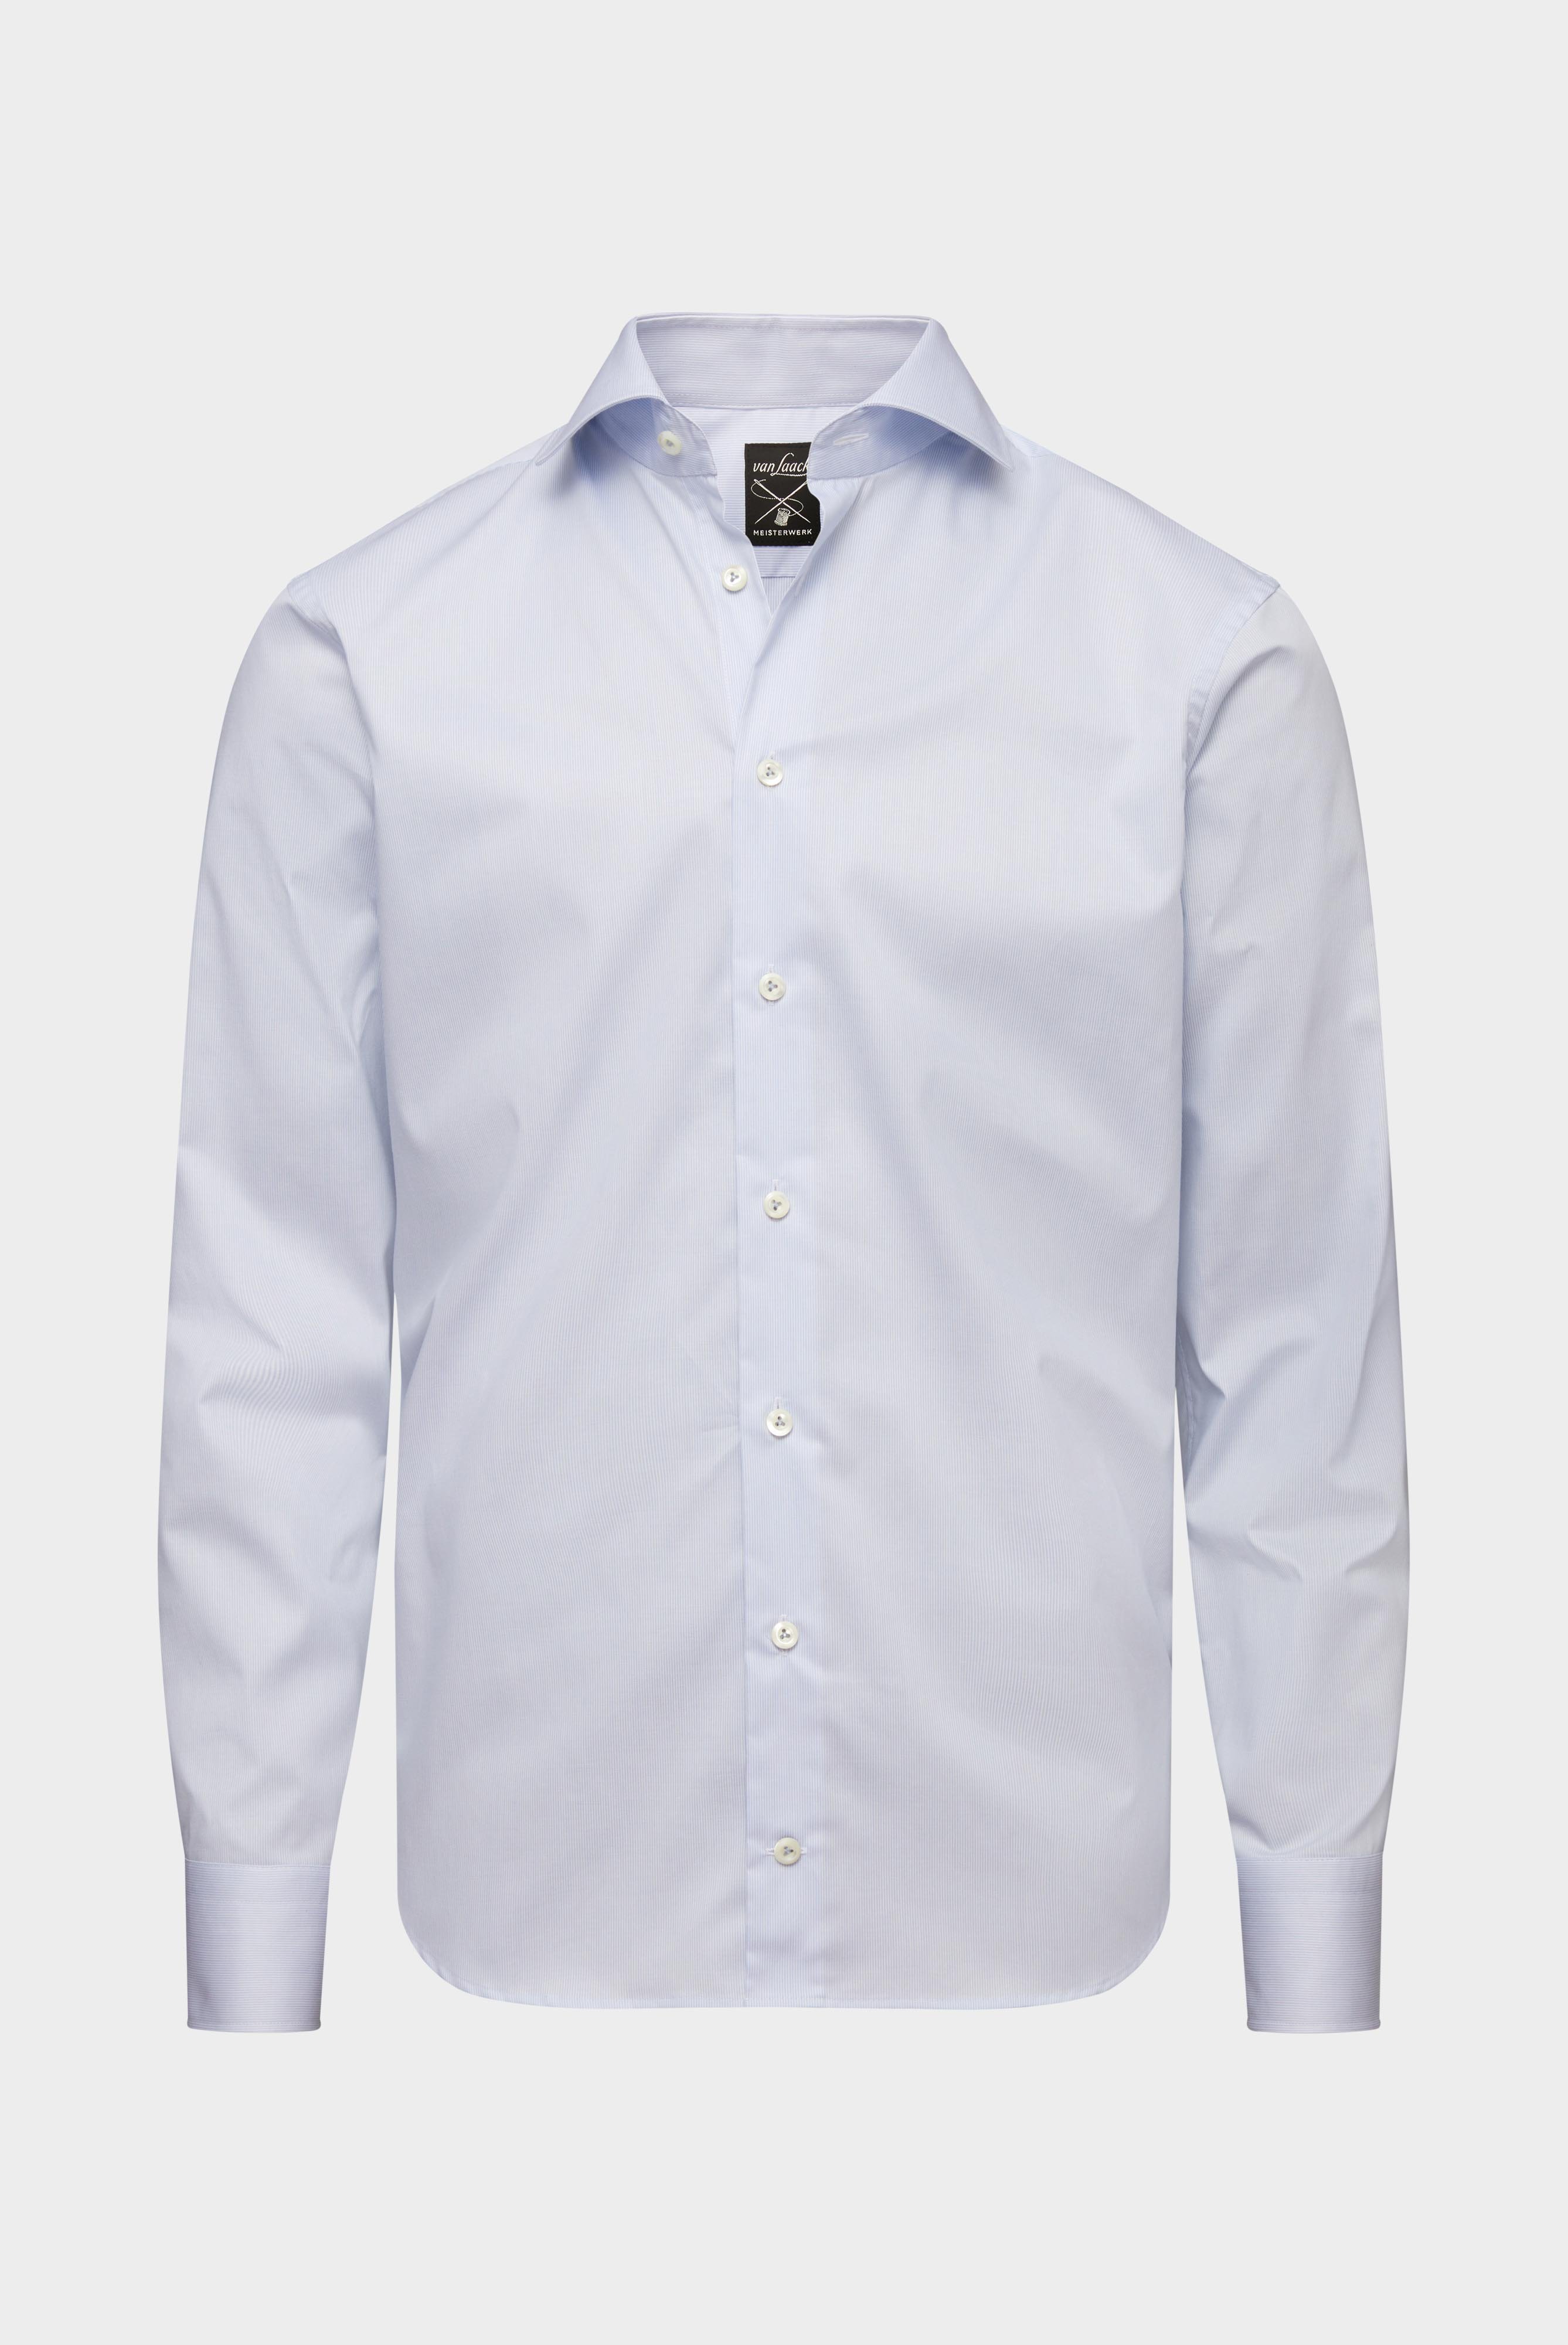 Easy Iron Shirts+Wrinkle-Free Twill Shirt Slim Fit+20.2019.BQ.132959.720.37